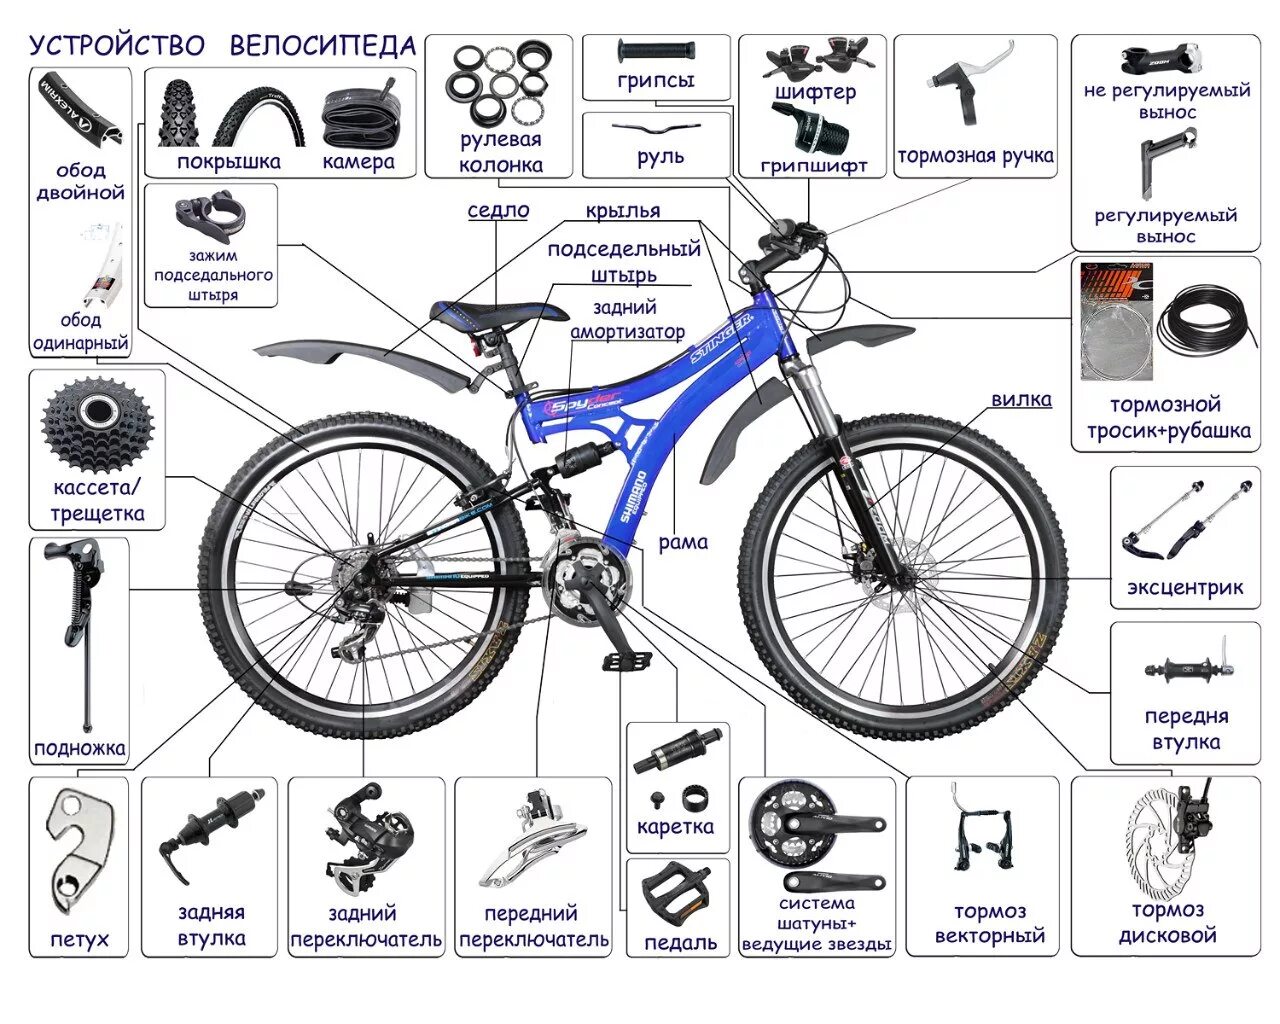 Сборка велосипеда ridelite. Схема велосипеда с названием деталей стелс. Строение горного велосипеда схема. Скоростной велосипед стелс строение. Схема сборки скоростного велосипеда.